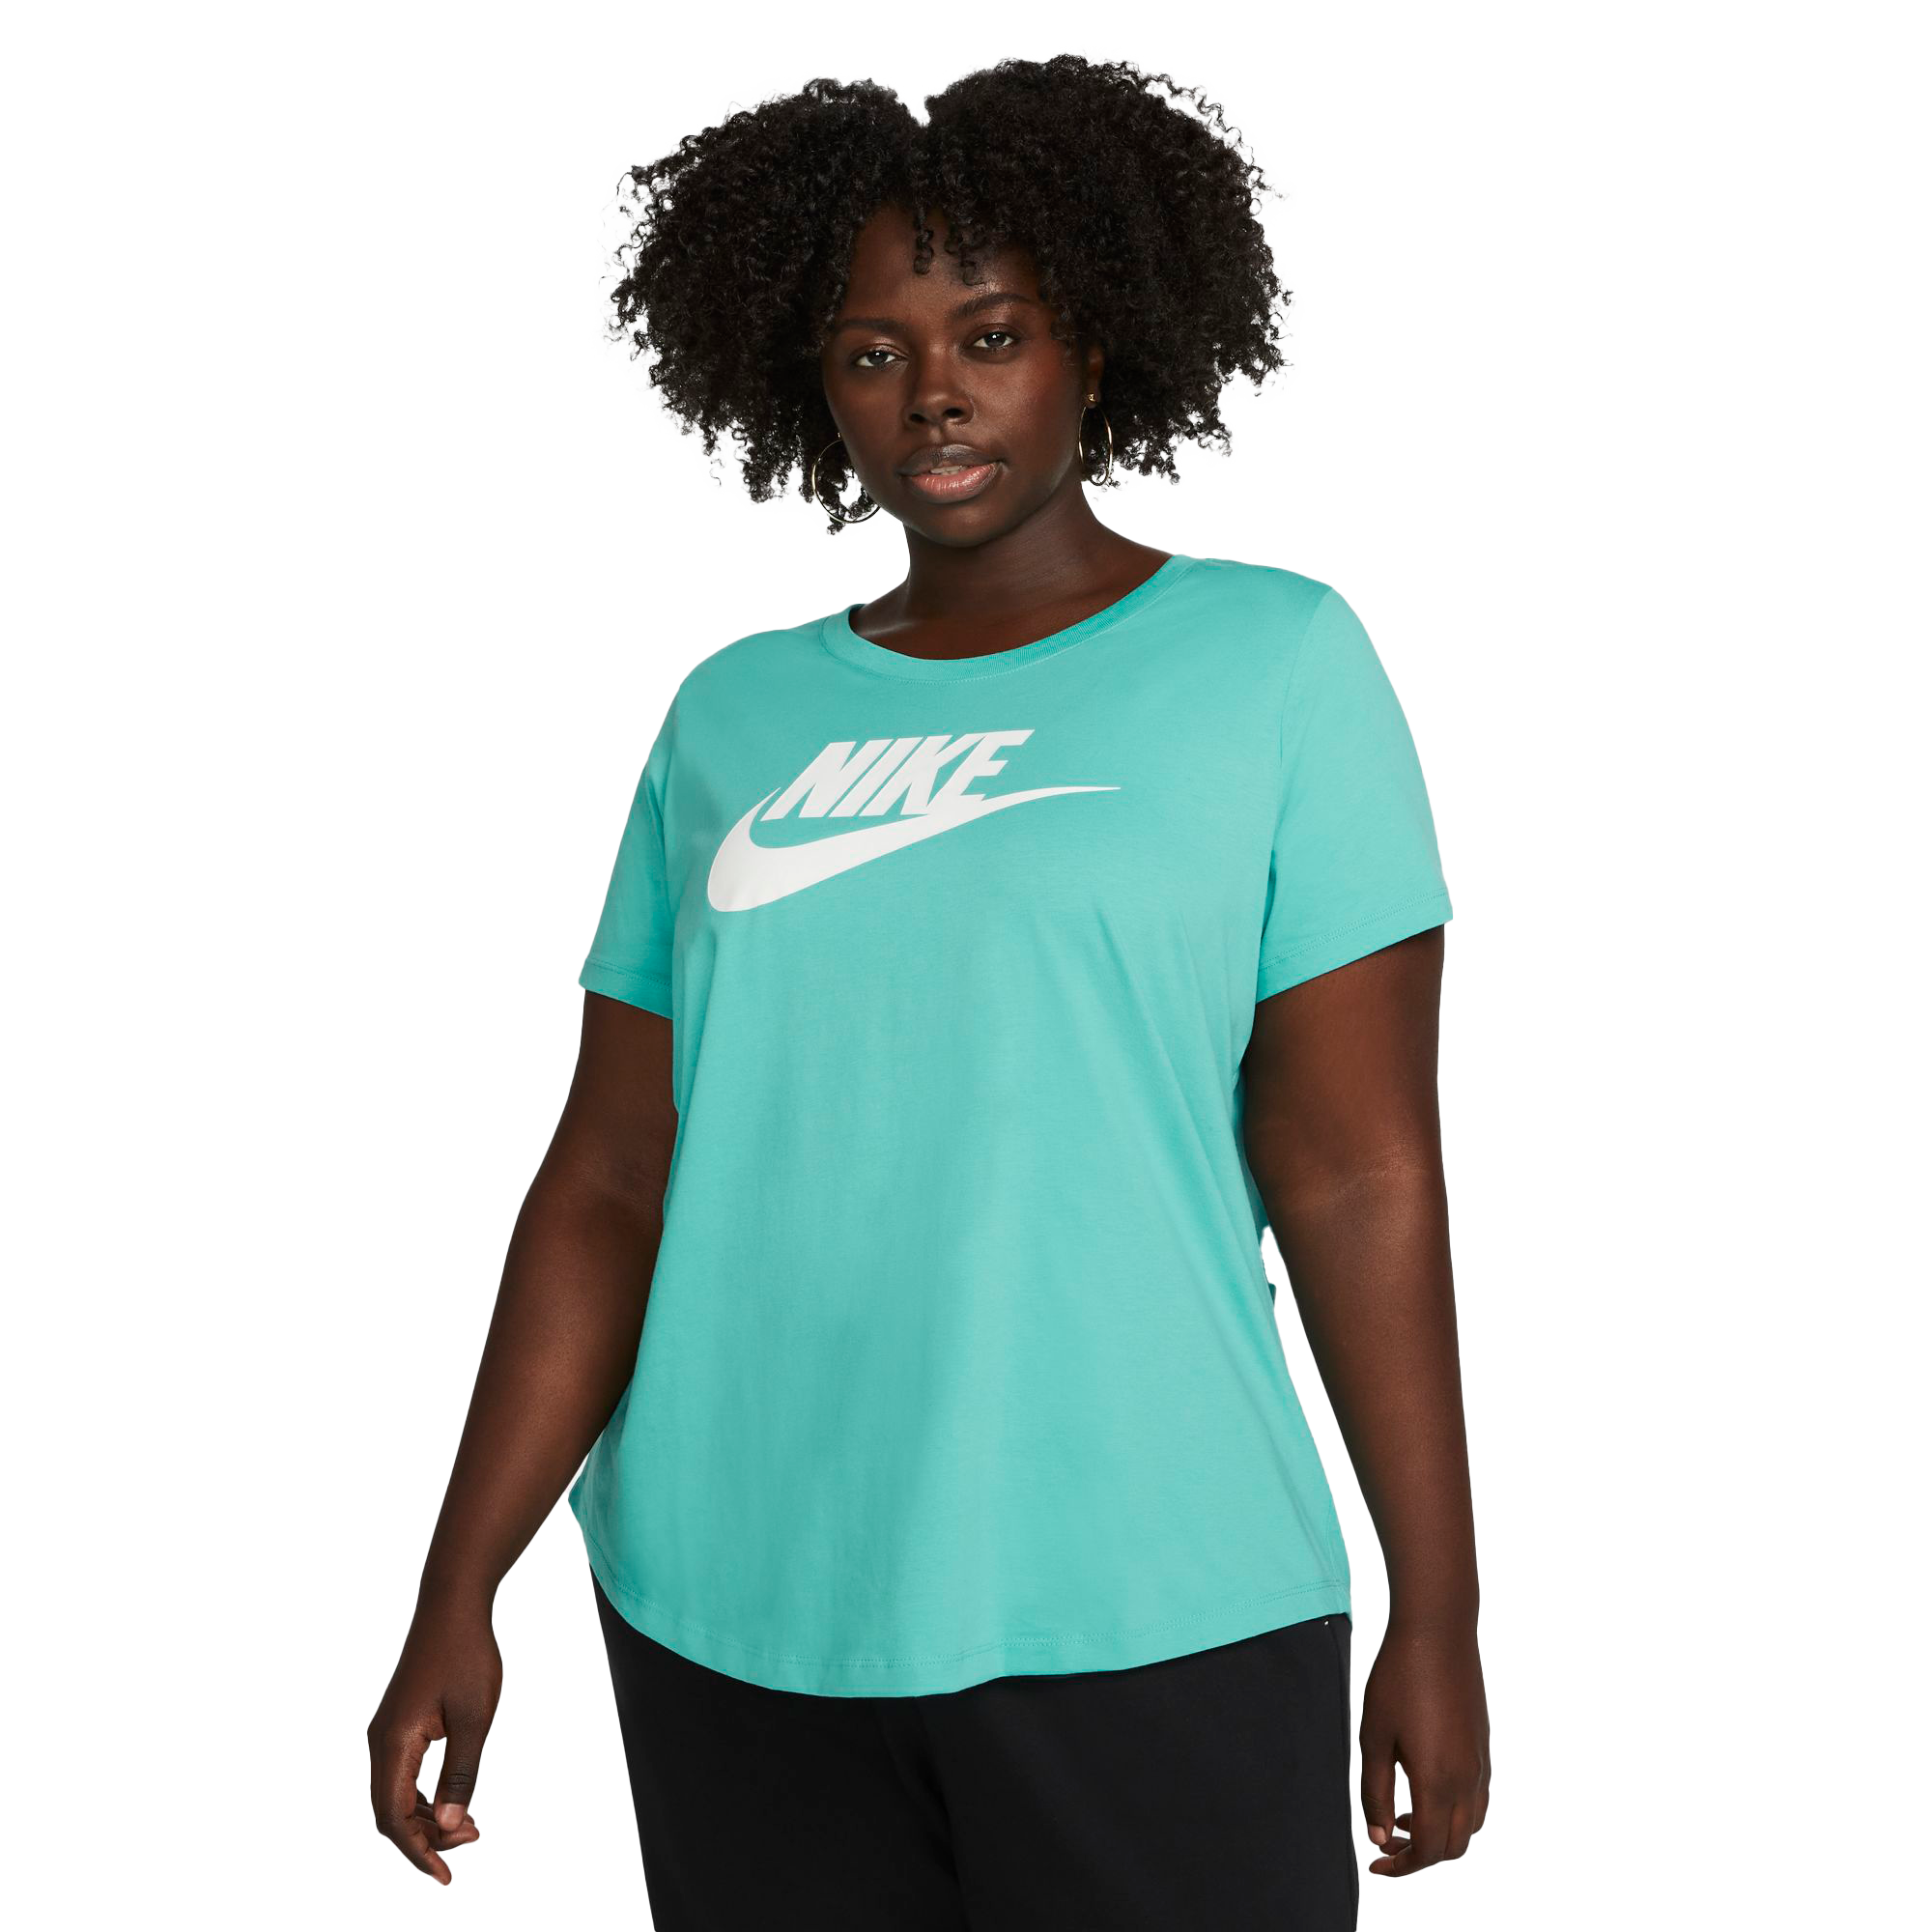 Women's T-Shirts. Sports & Casual Women's Tops. Nike BE